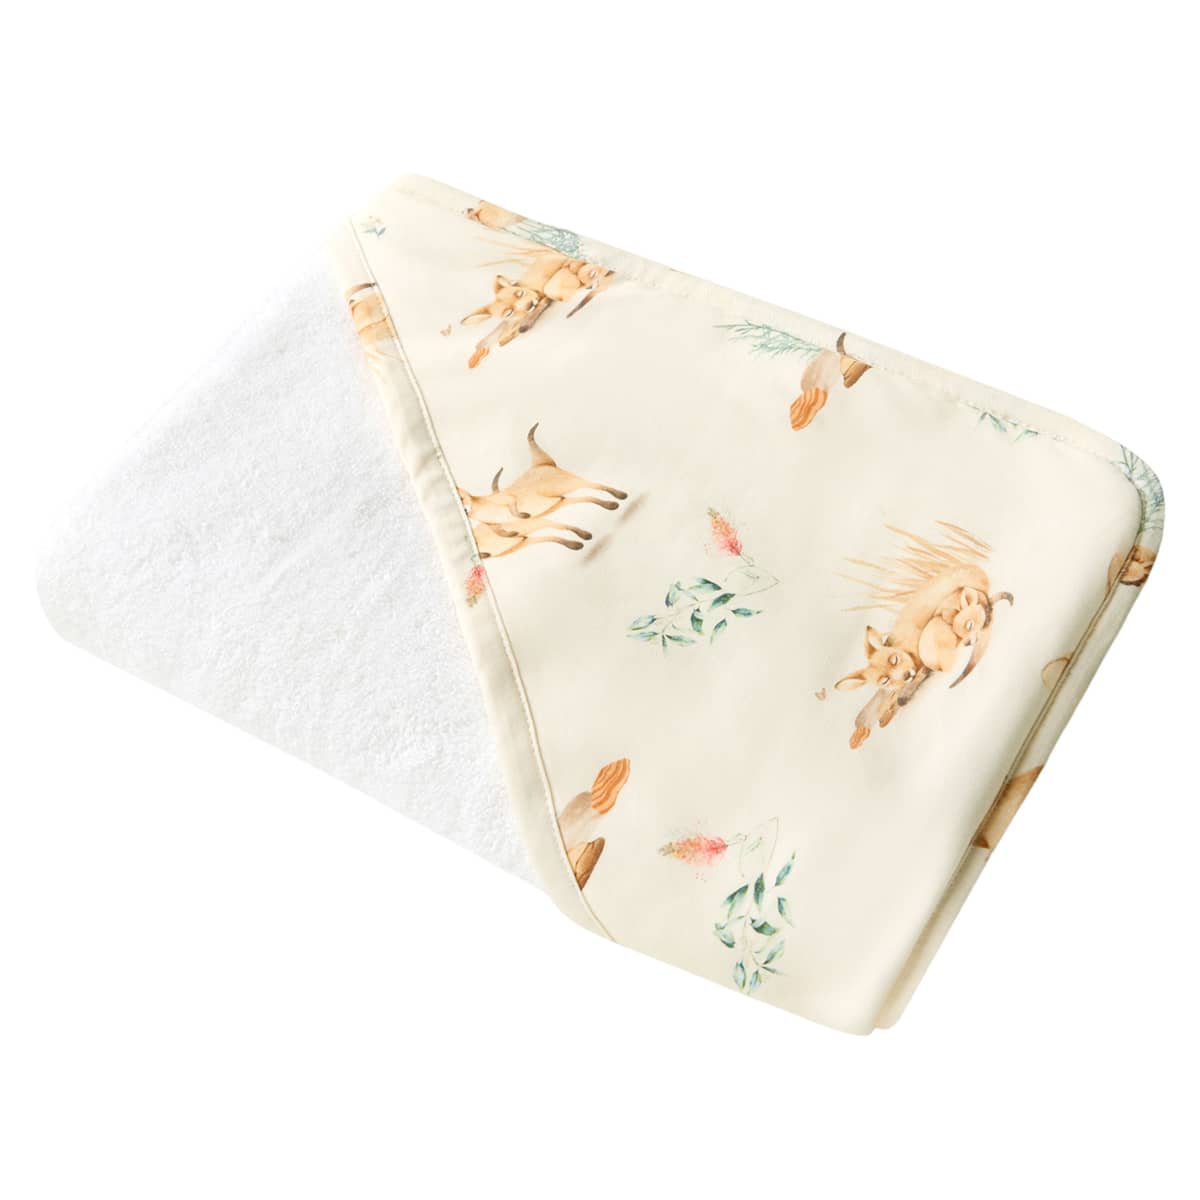 Snuggle Hunny Organic Hooded Baby Towel - Kanga